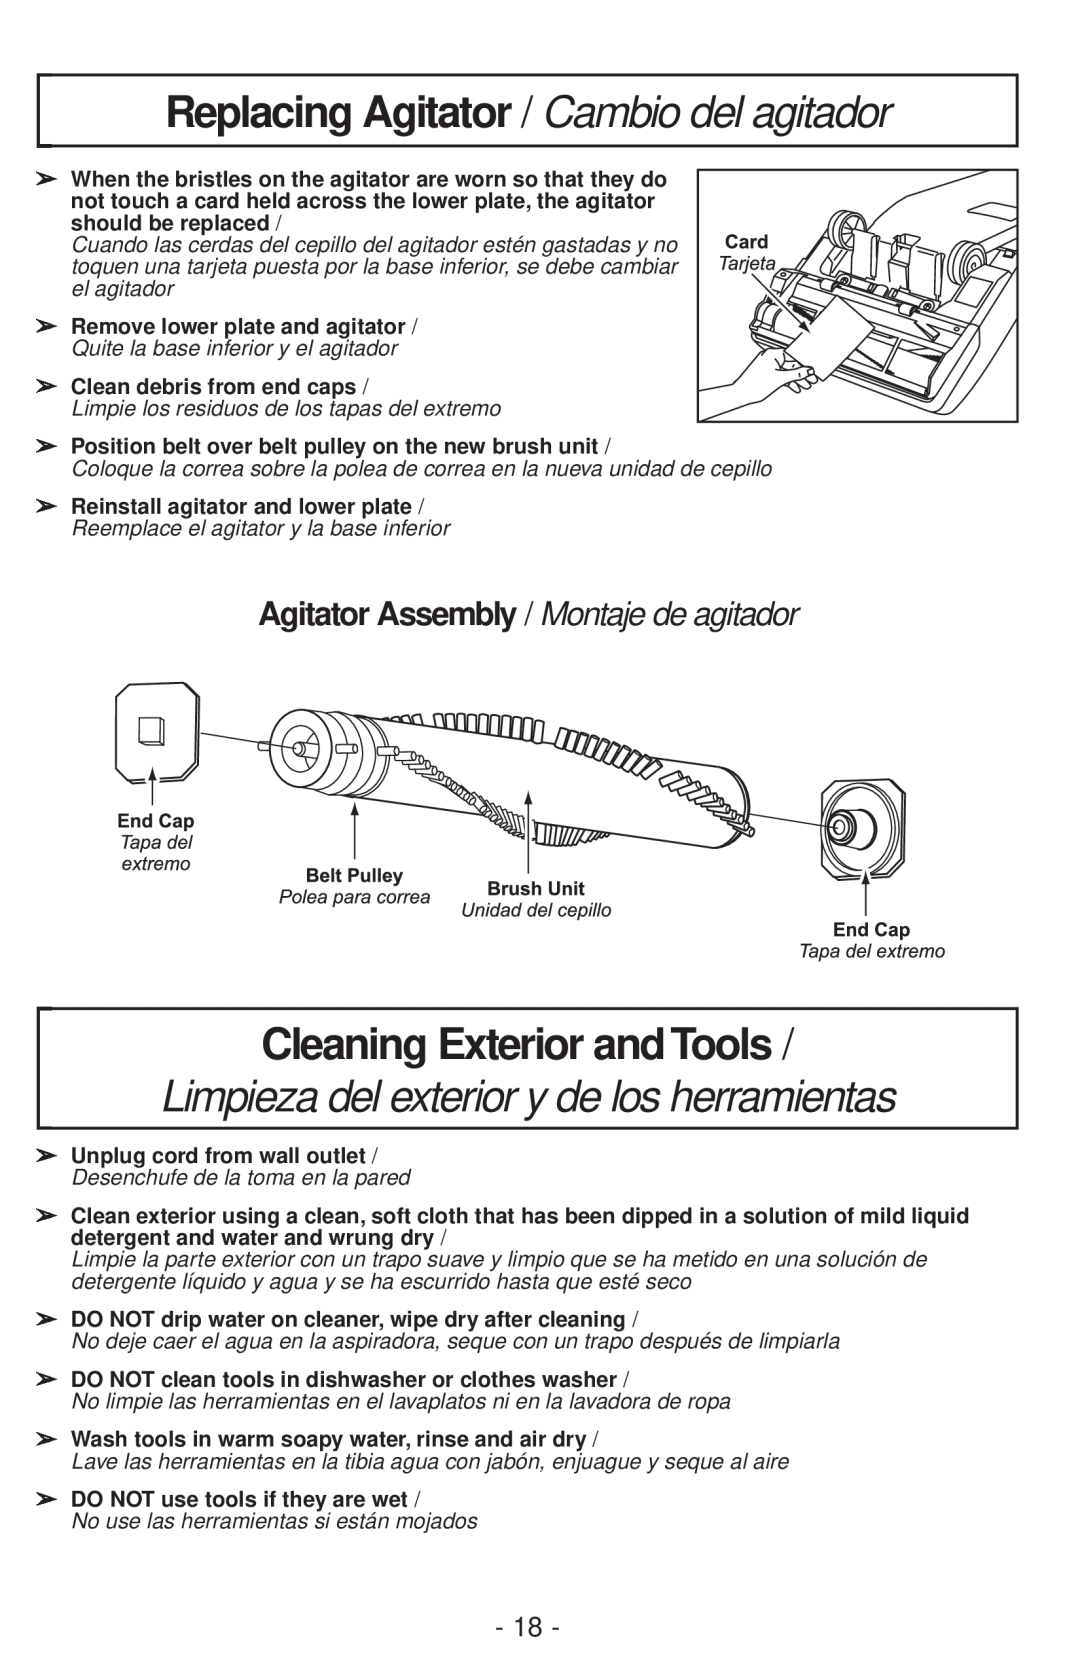 Panasonic MC-V200 manual Replacing Agitator / Cambio del agitador, Cleaning Exterior and Tools 